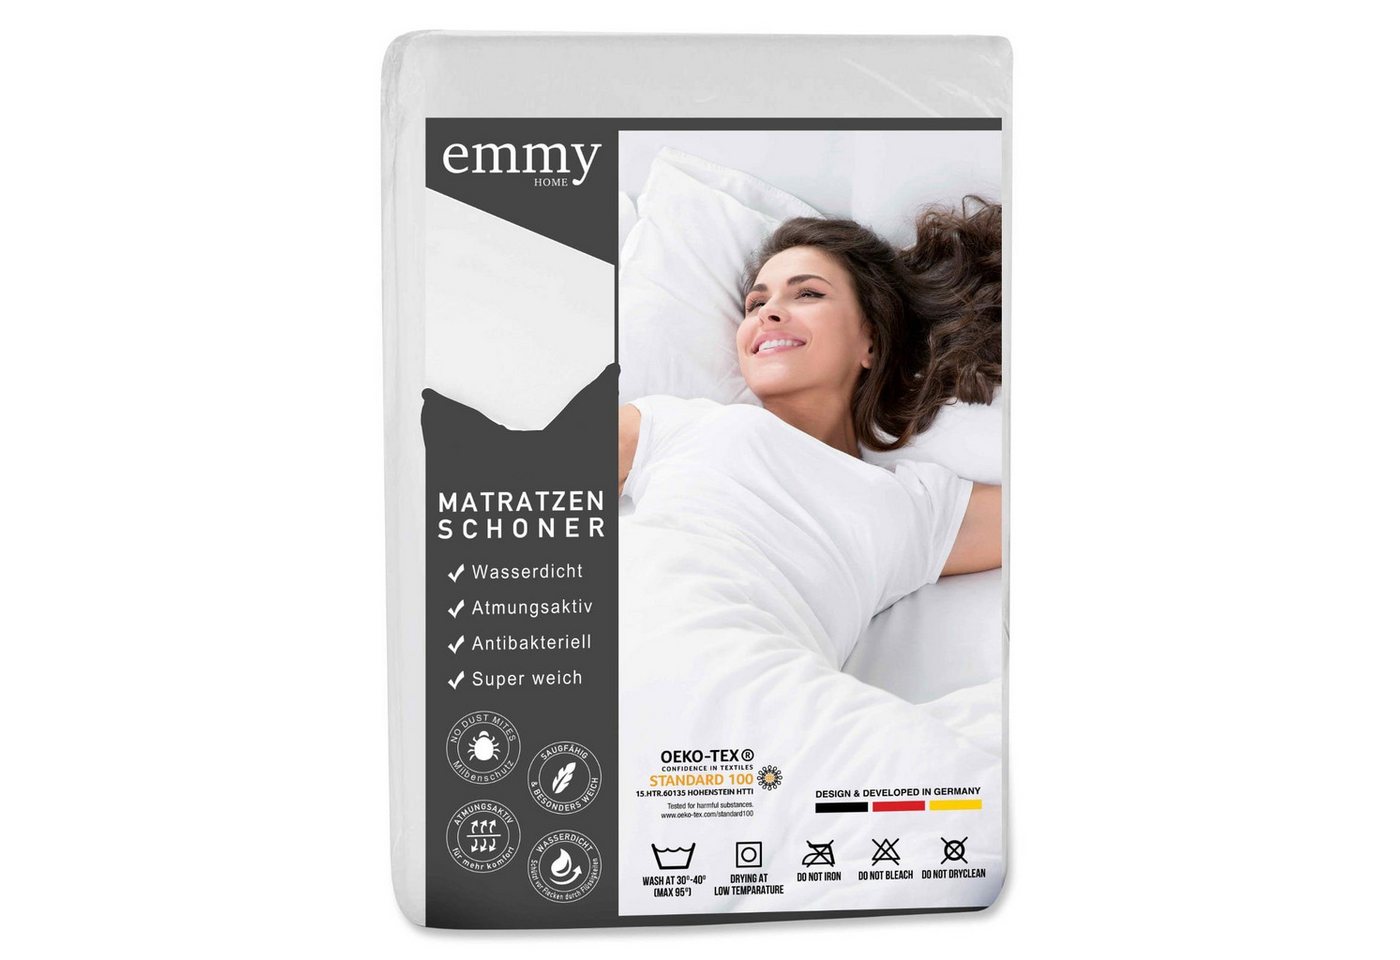 Matratzenschoner Matratzenschoner Emmy Home von Emmy Home